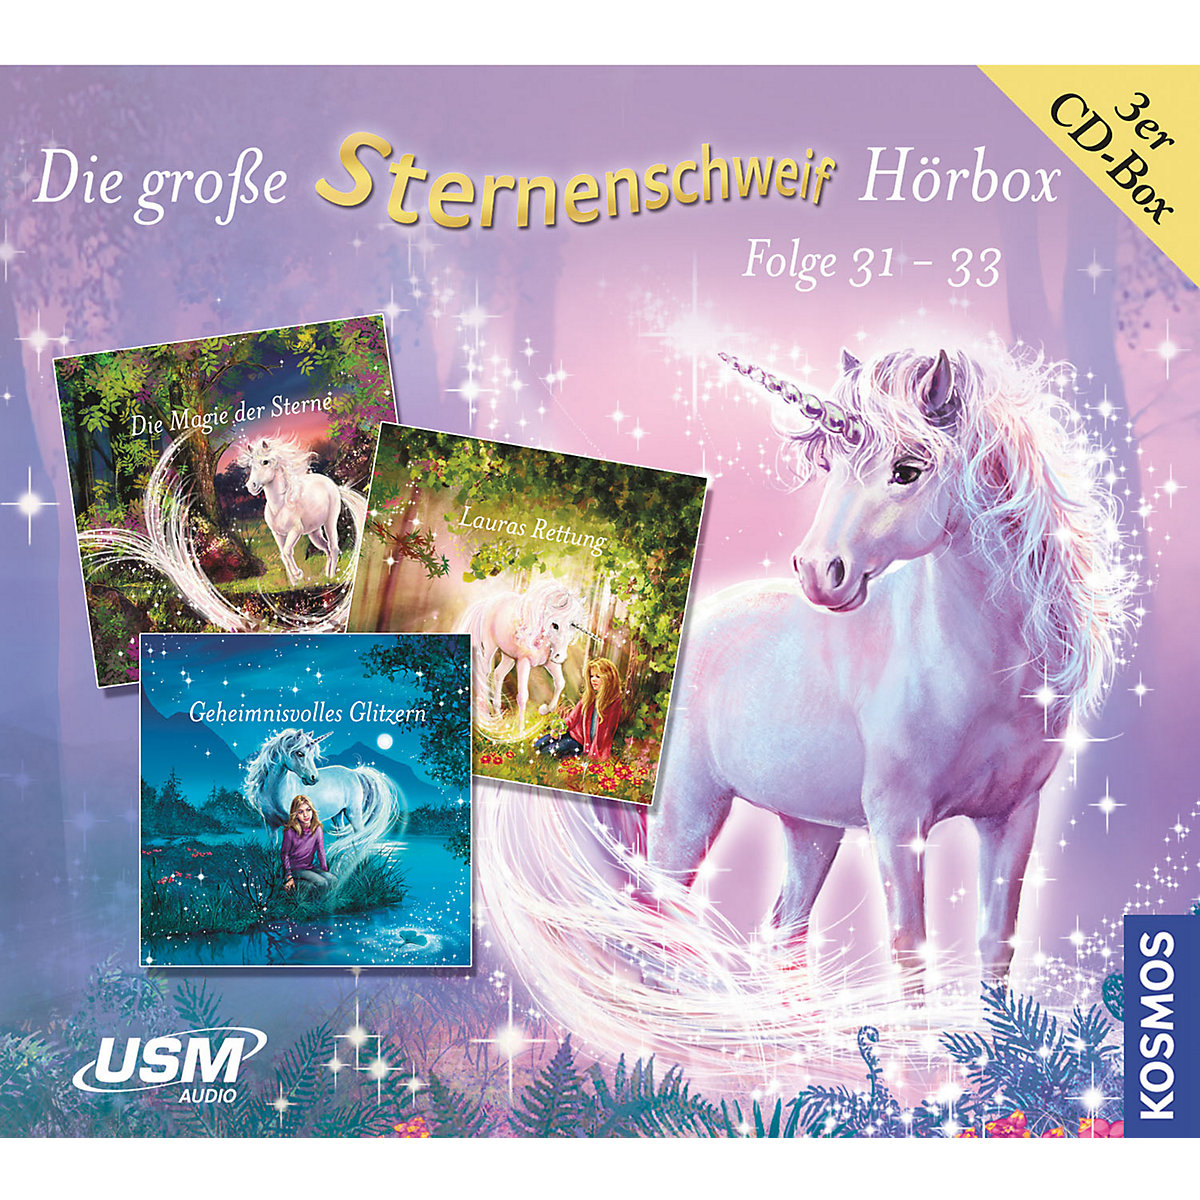 CD Die große Sternenschweif Hörbox Folgen 31-33 (3 Audio CDs)